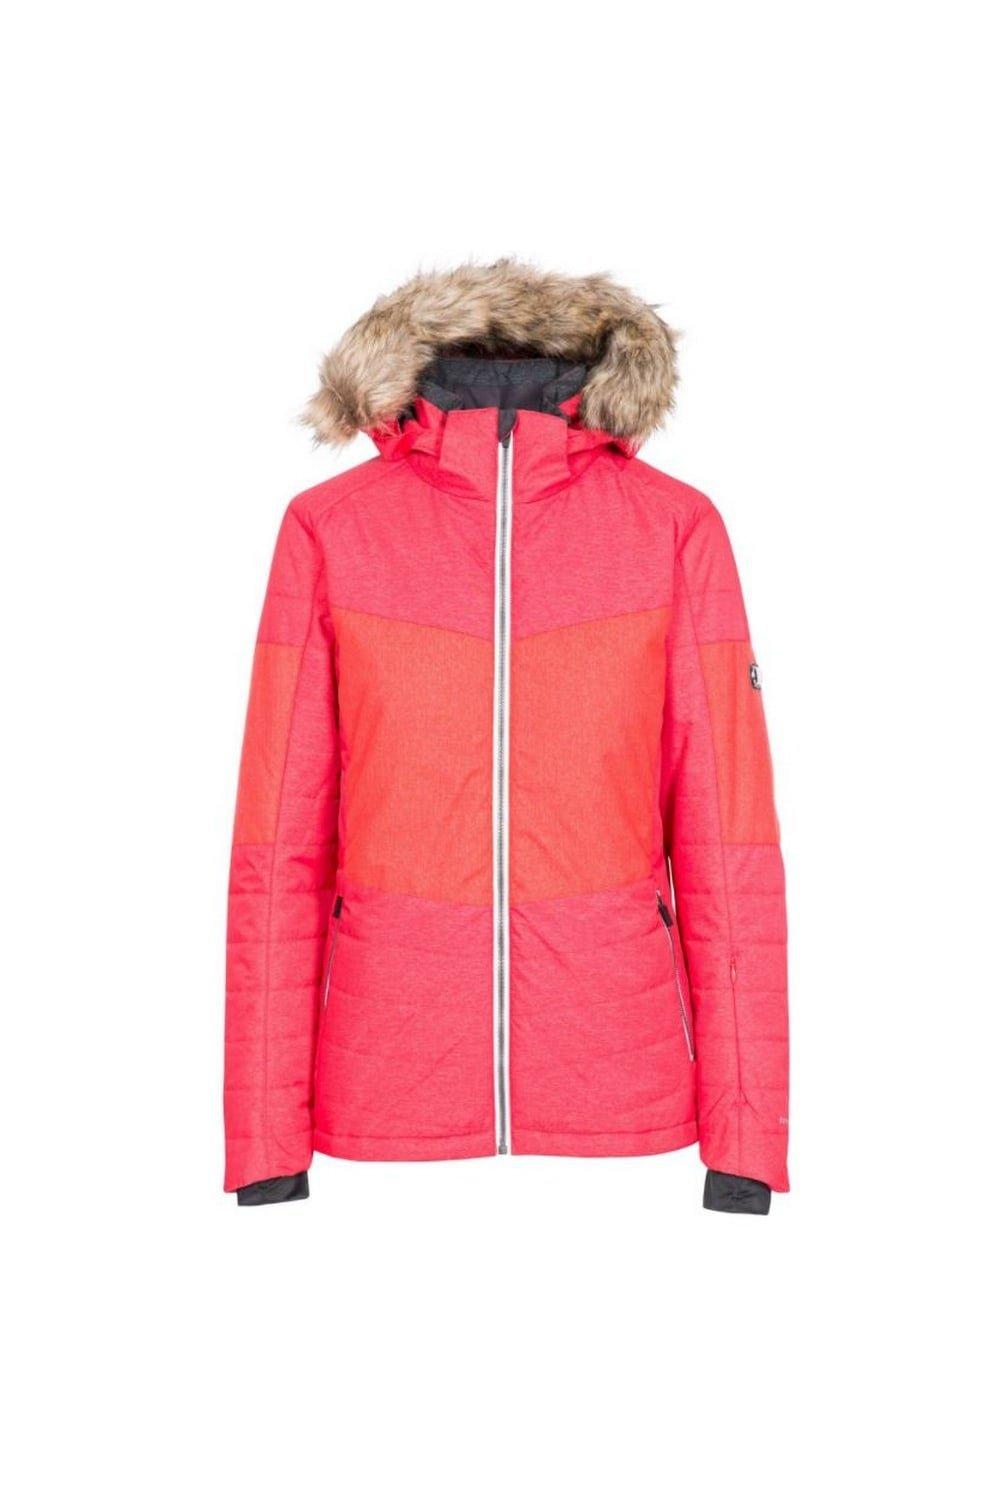 Лыжная куртка Тиффани Trespass, красный куртка trespass furst синий